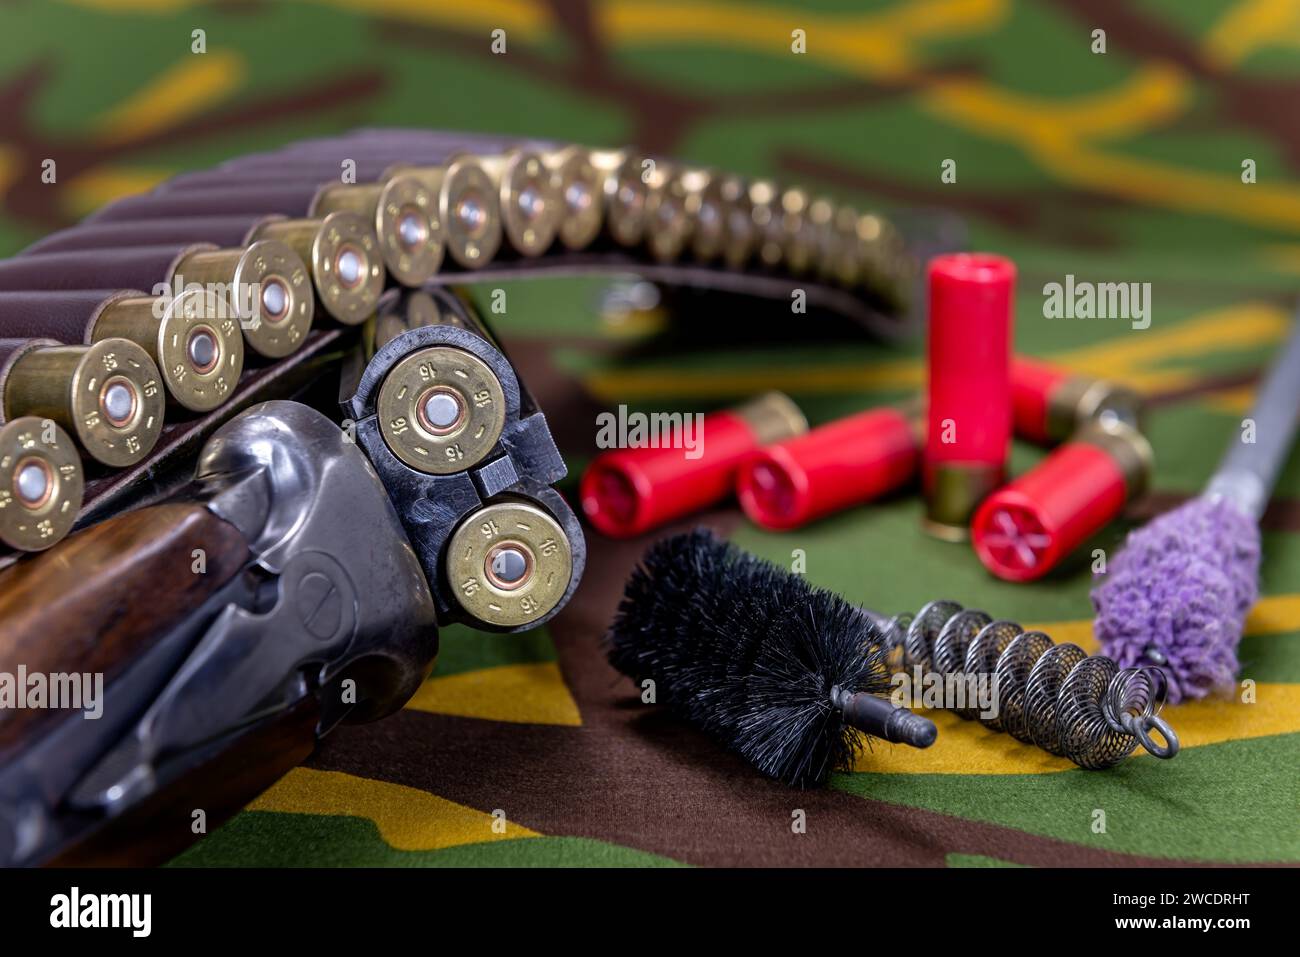 Fucile da caccia e munizioni con spazzole per la pulizia delle armi che giacciono su uno sfondo mimetico. Messa a fuoco selettiva. Foto Stock